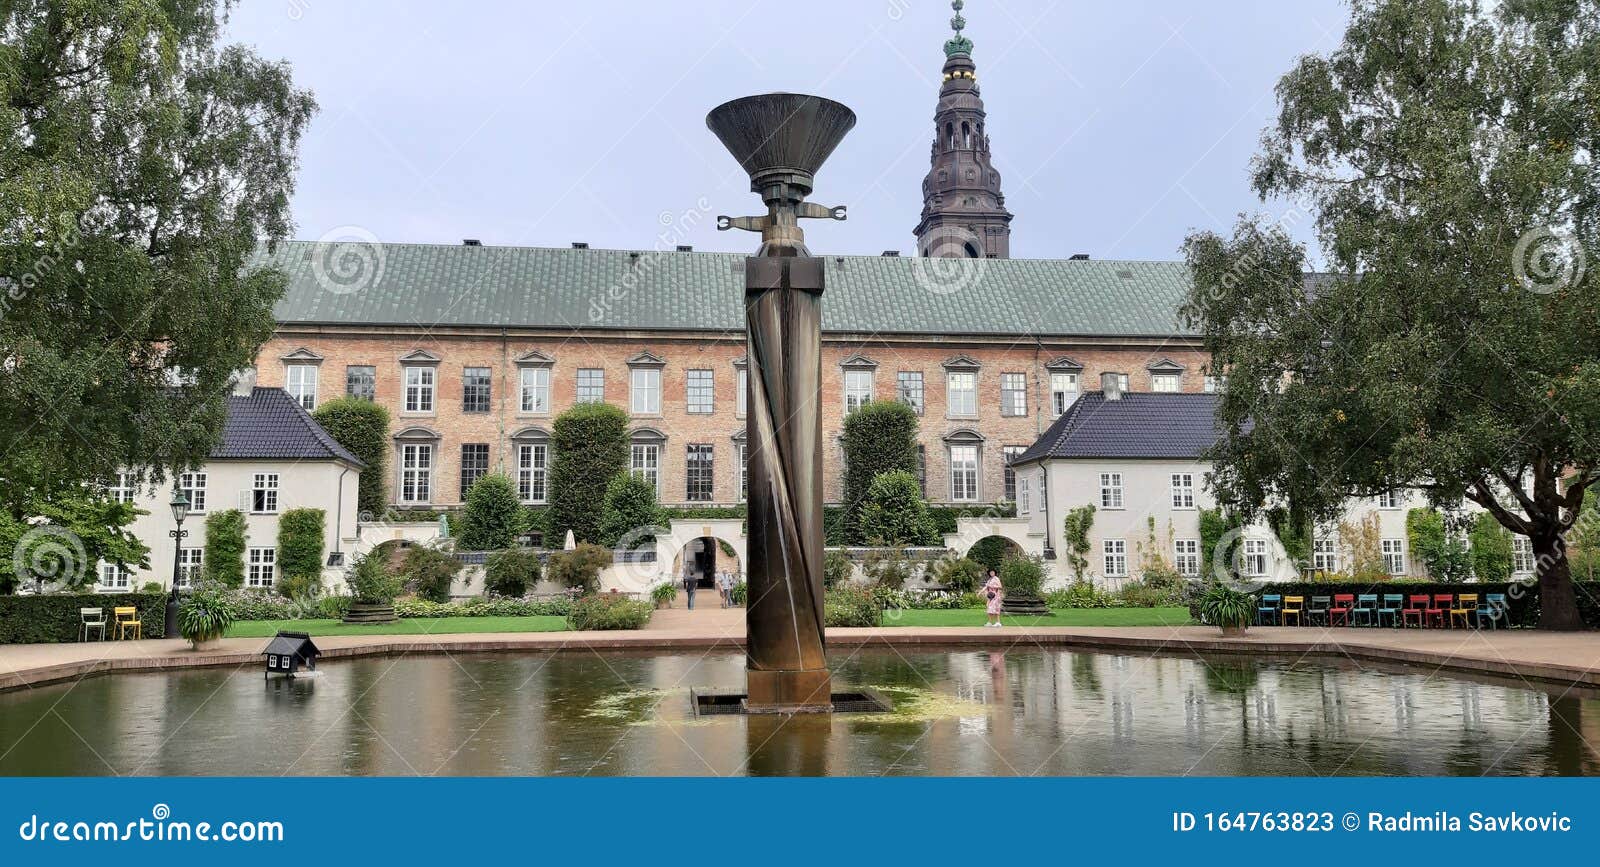 royal library garden, christiansborg palac, copenhagen, denmark